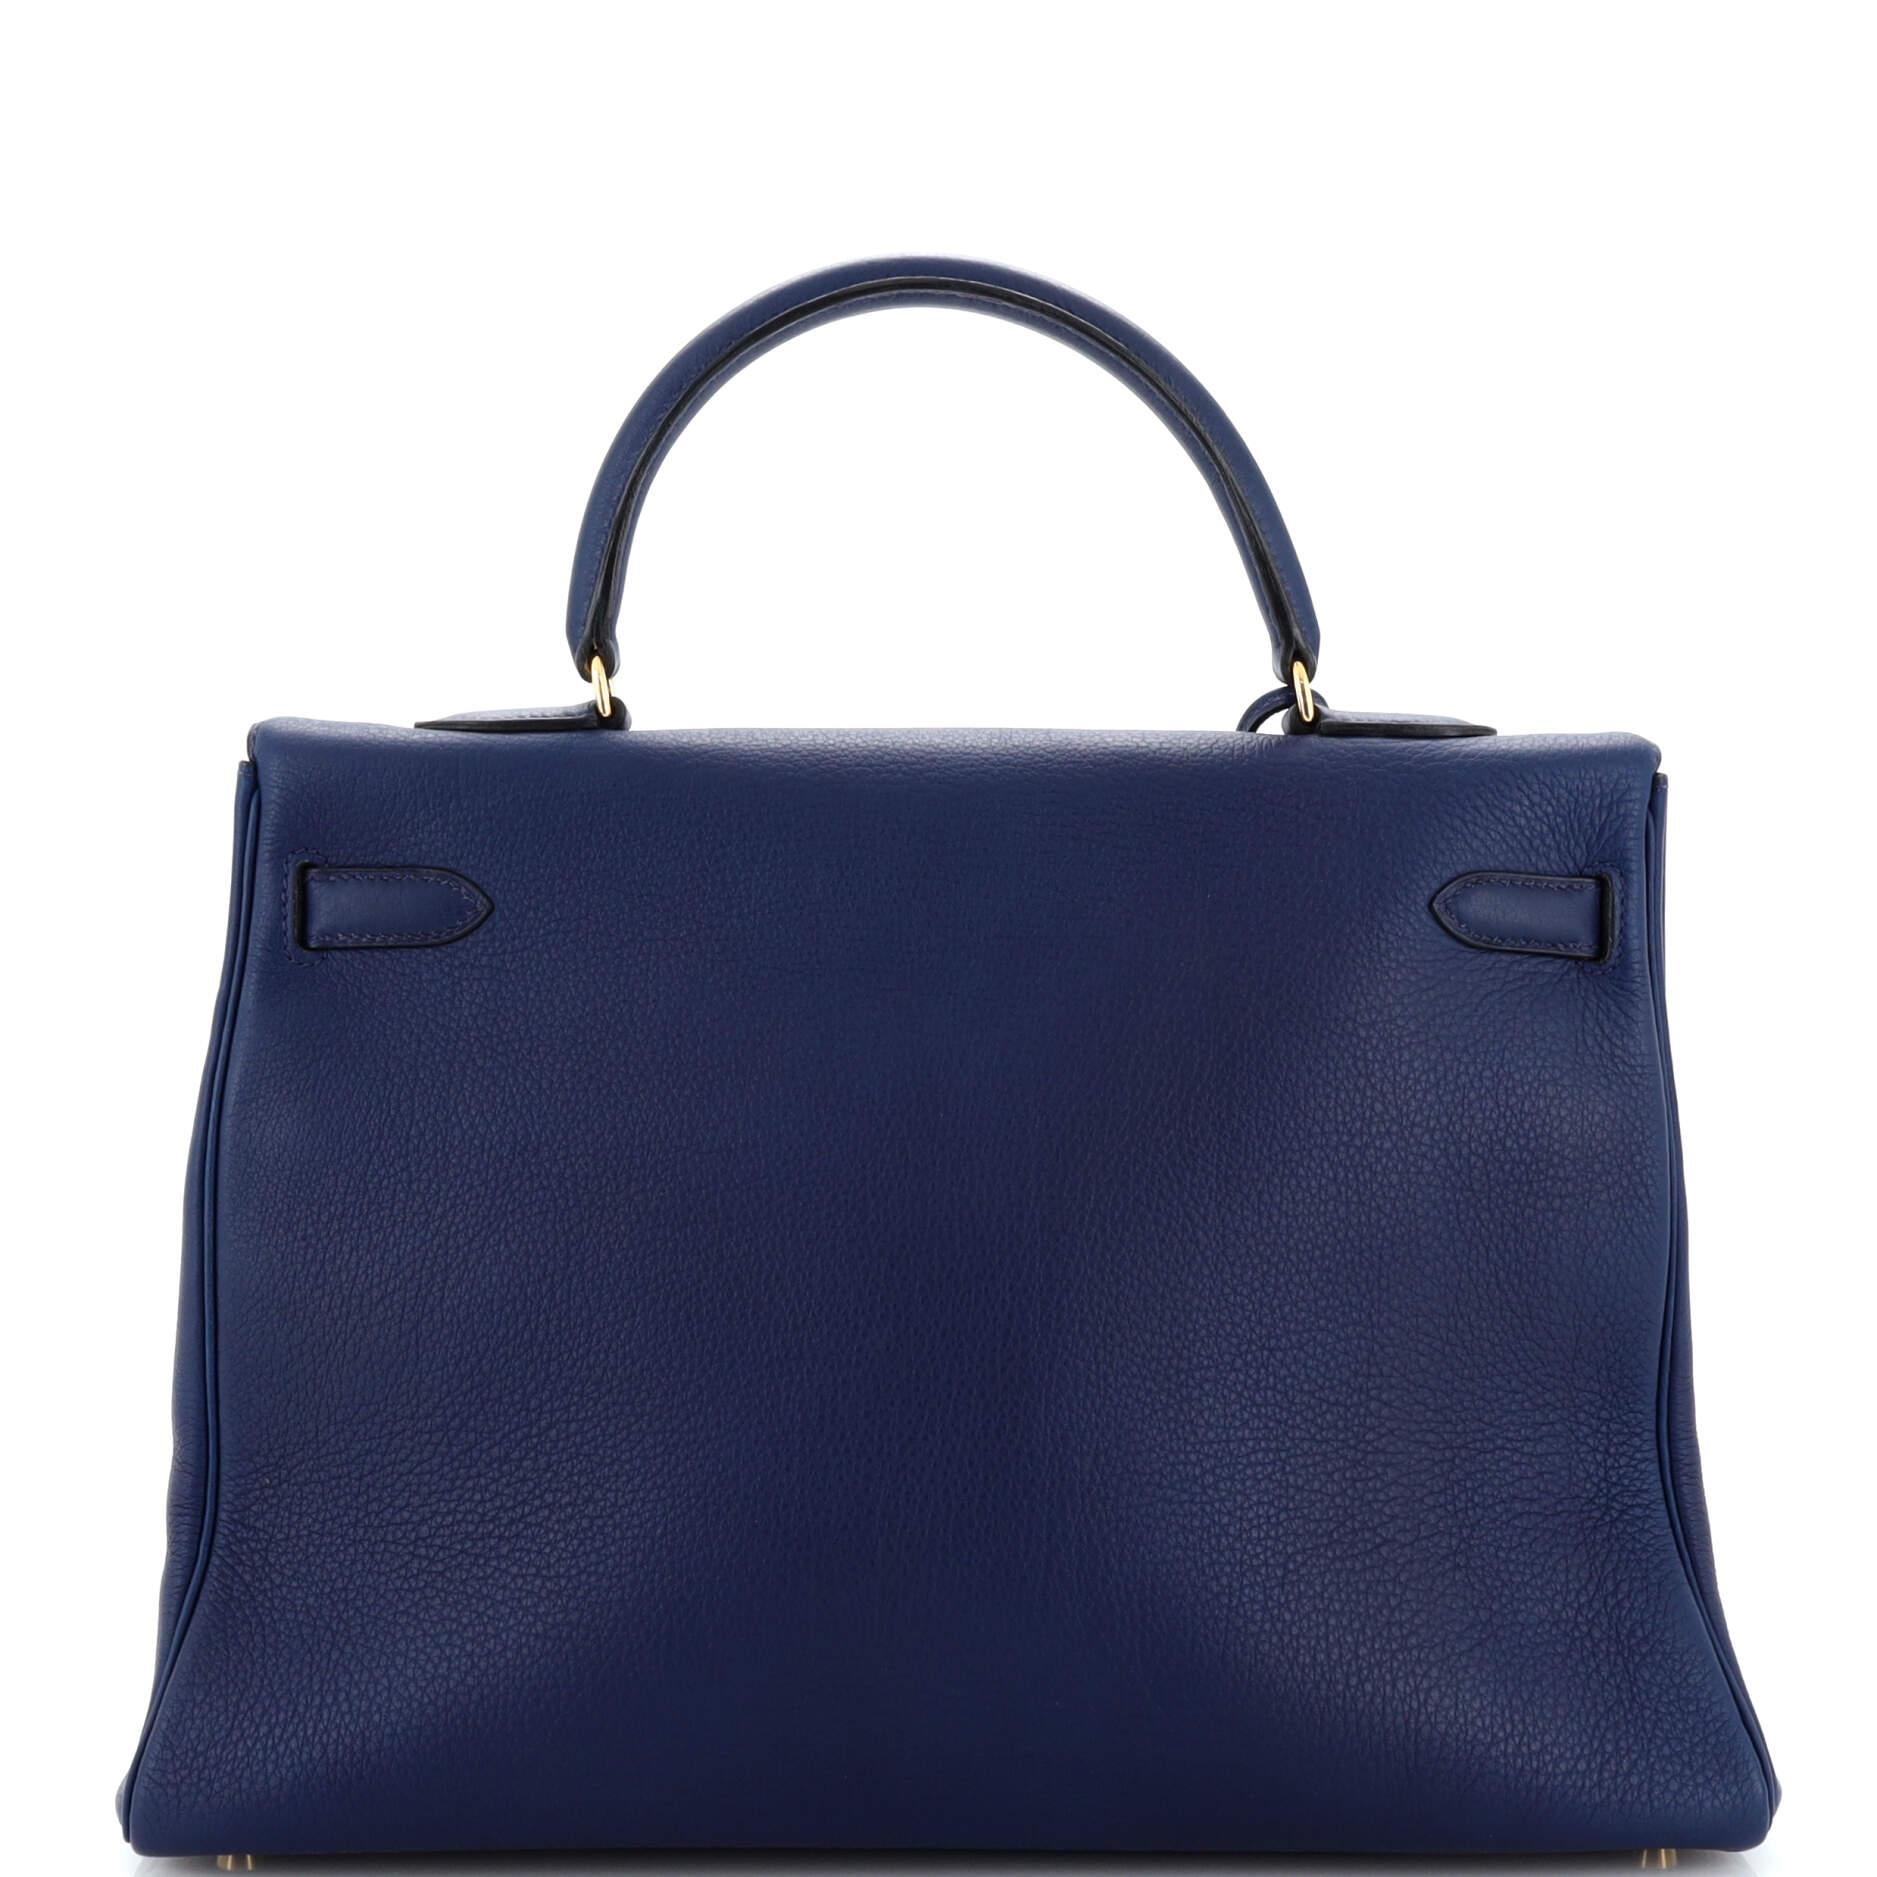 Women's or Men's Hermes Kelly Handbag Bleu Saphir Clemence with Gold Hardware 35